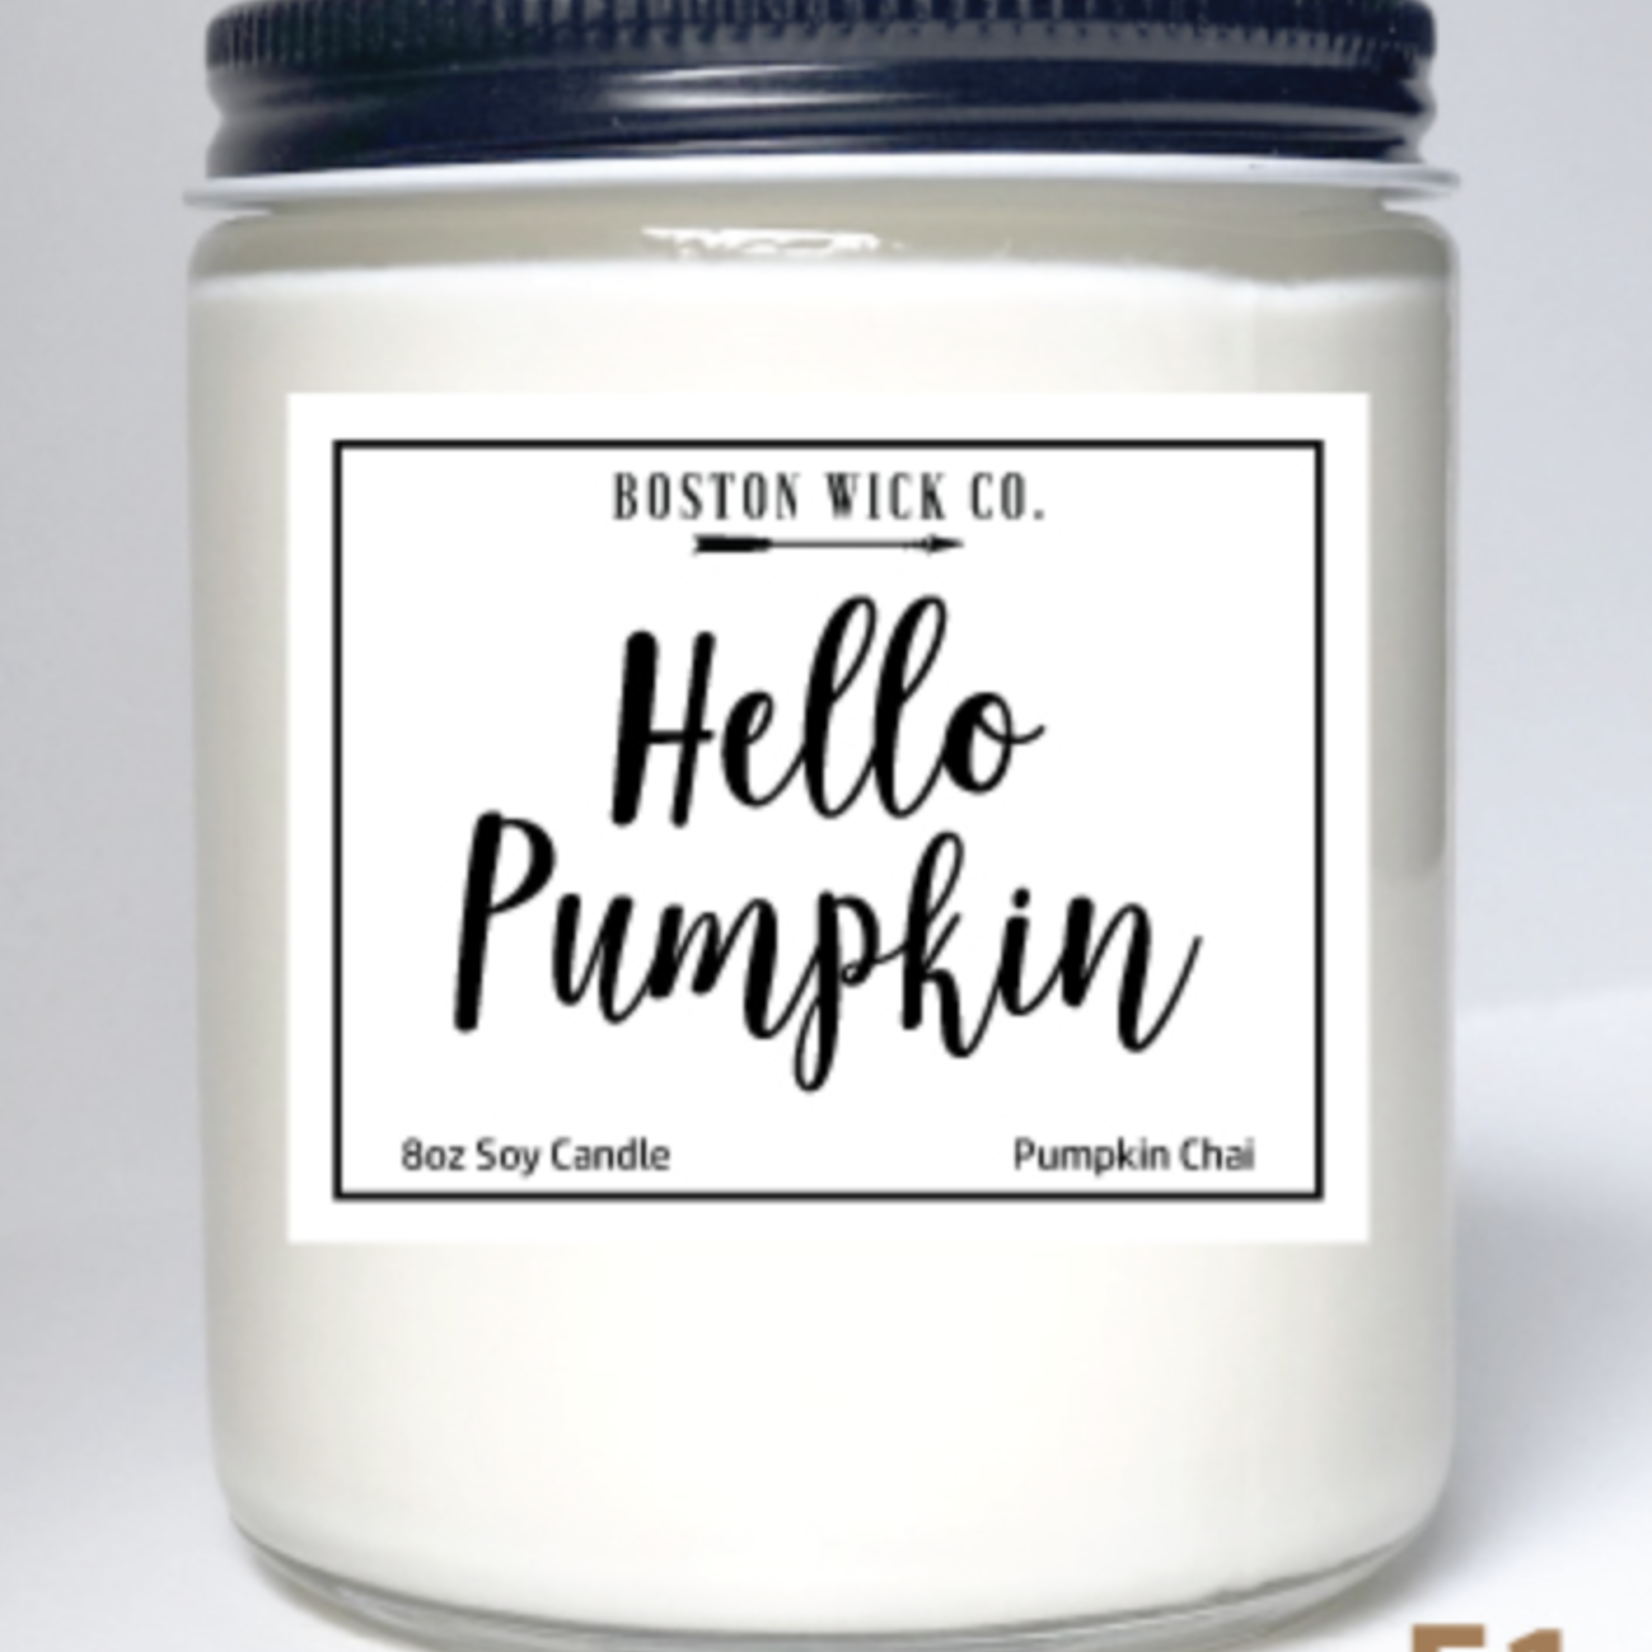 Boston Wick Boston Wick Company - Hello Pumpkin Candle